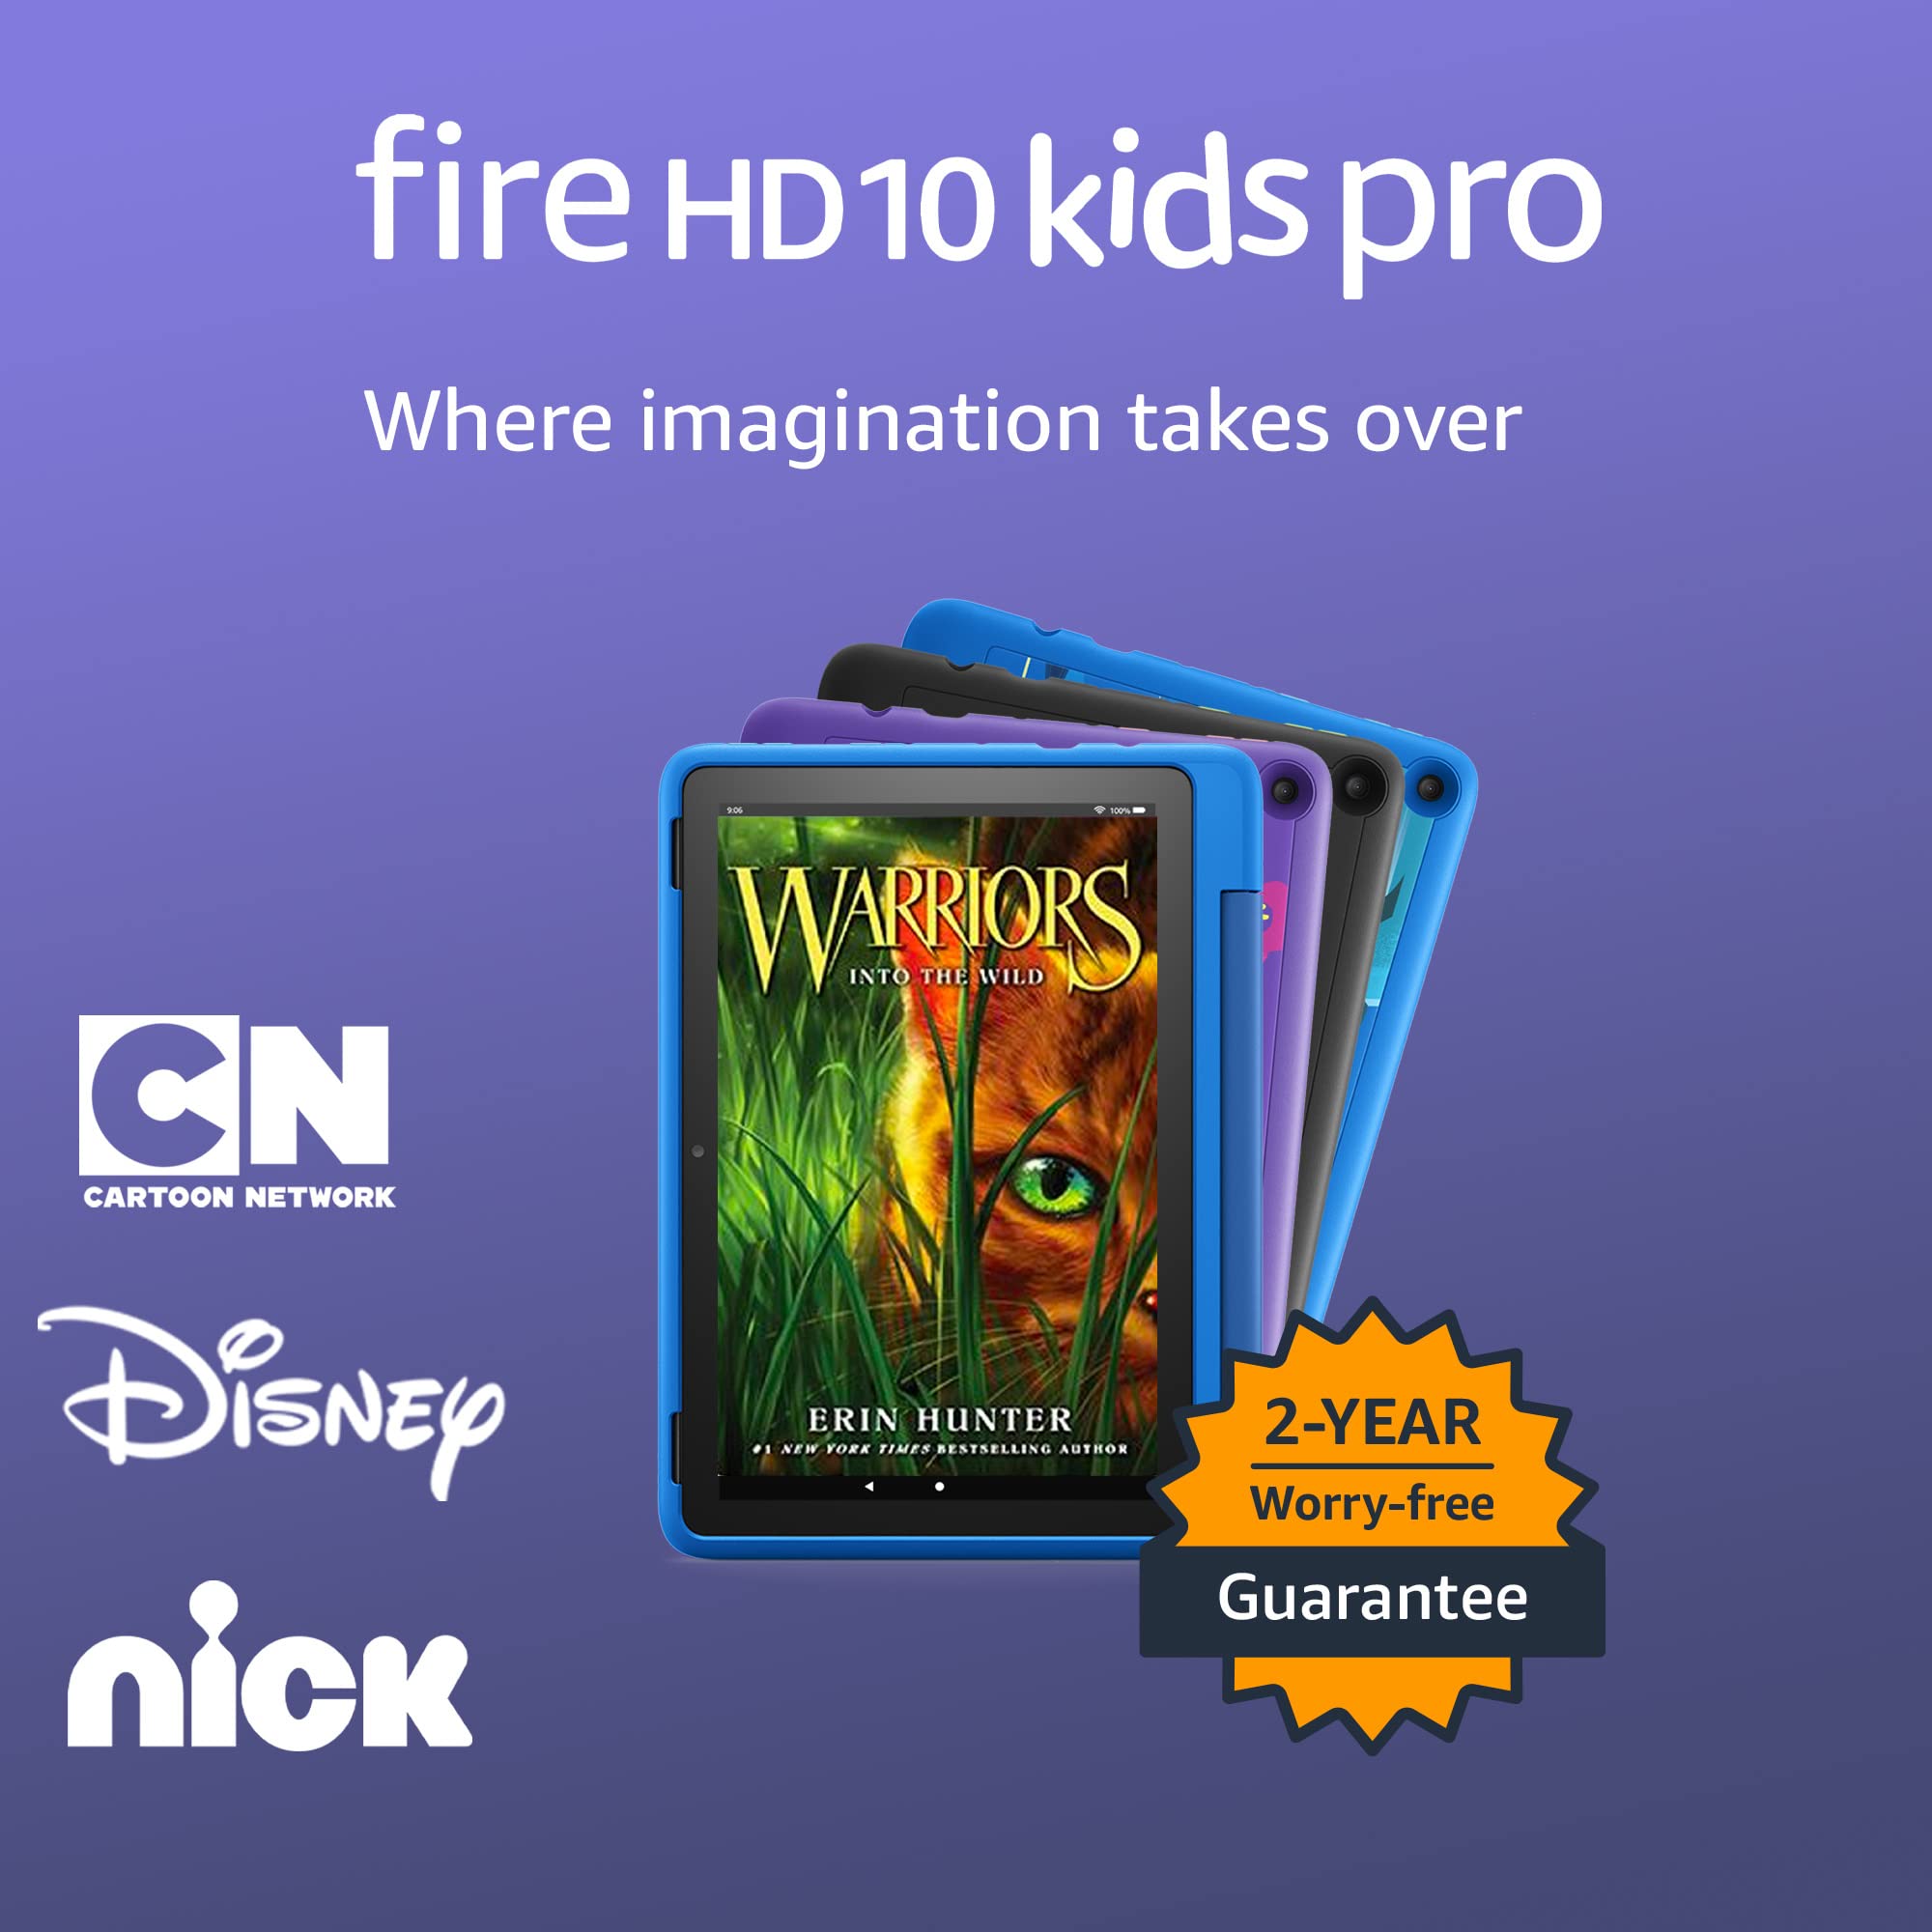 Amazon Fire HD 10 Kids Pro tablet, 10.1